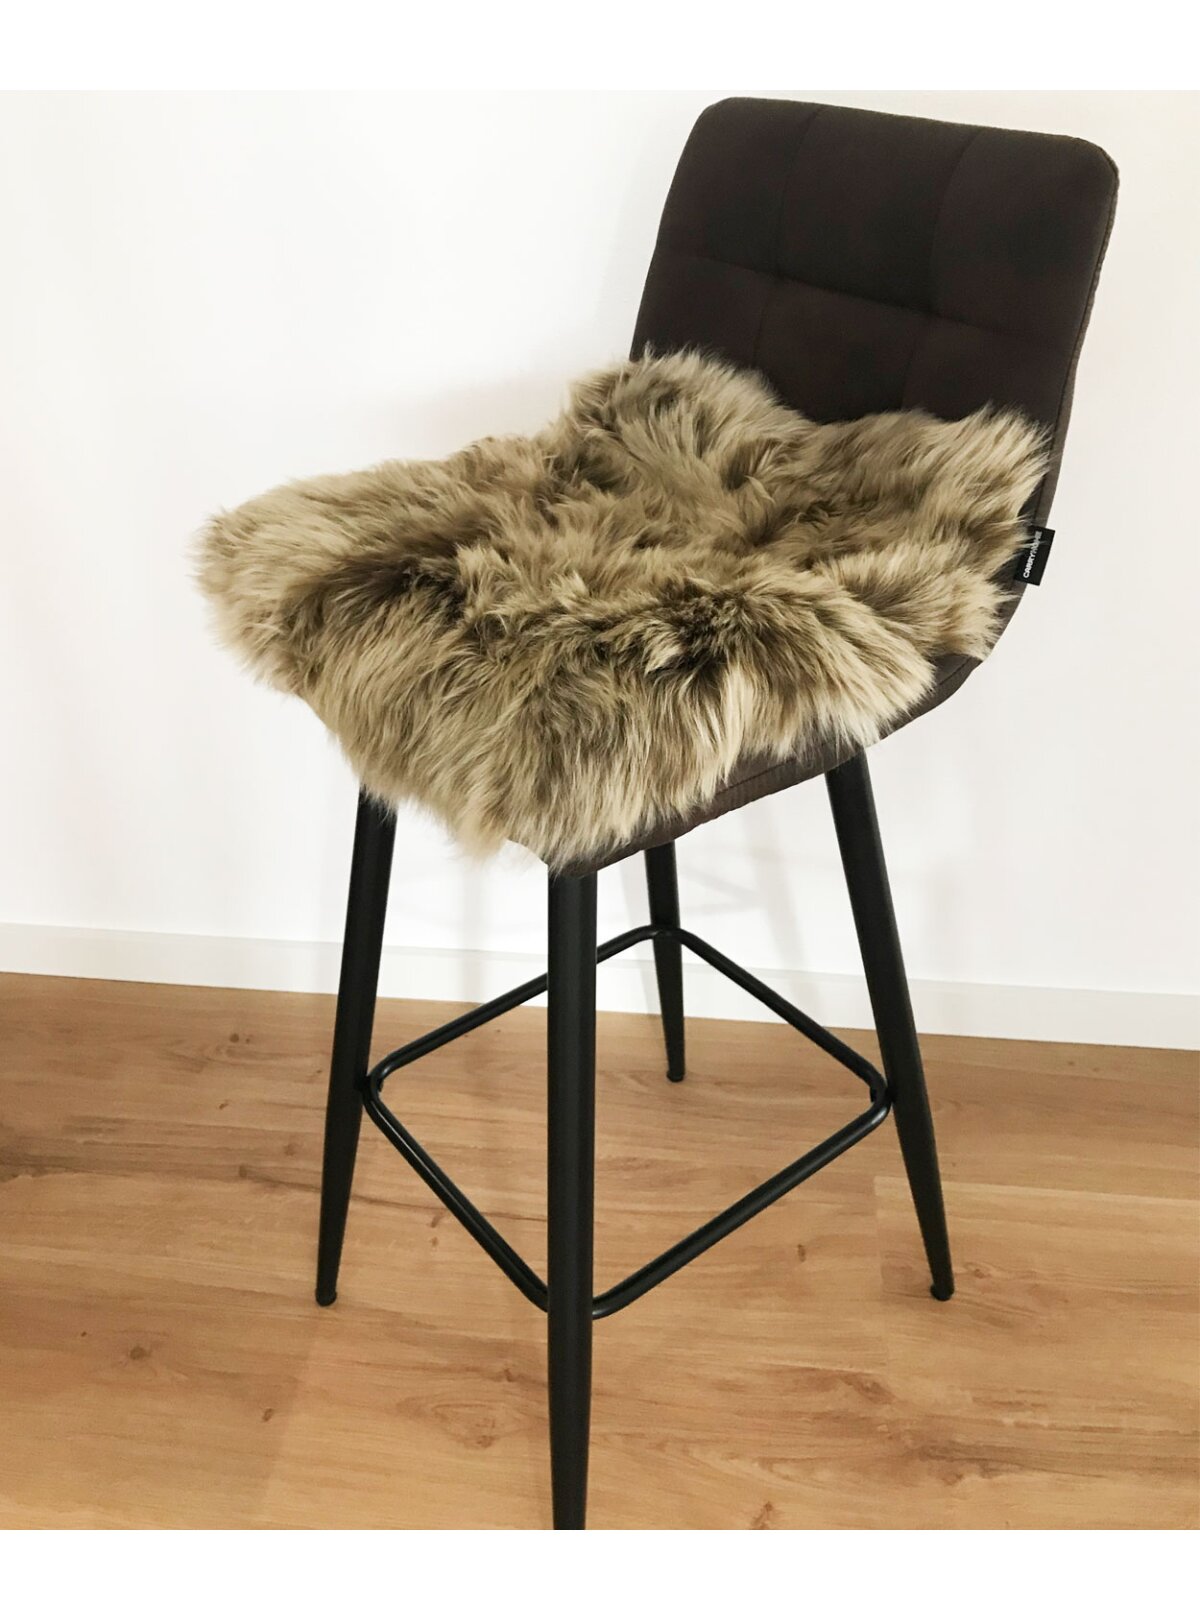 Lammfell Pad Sitzauflage Stuhlauflage Stuhlkissen braun gefärbt aus echtem  Island Lammfell in Taupe kurzwollig 37 x 37 cm